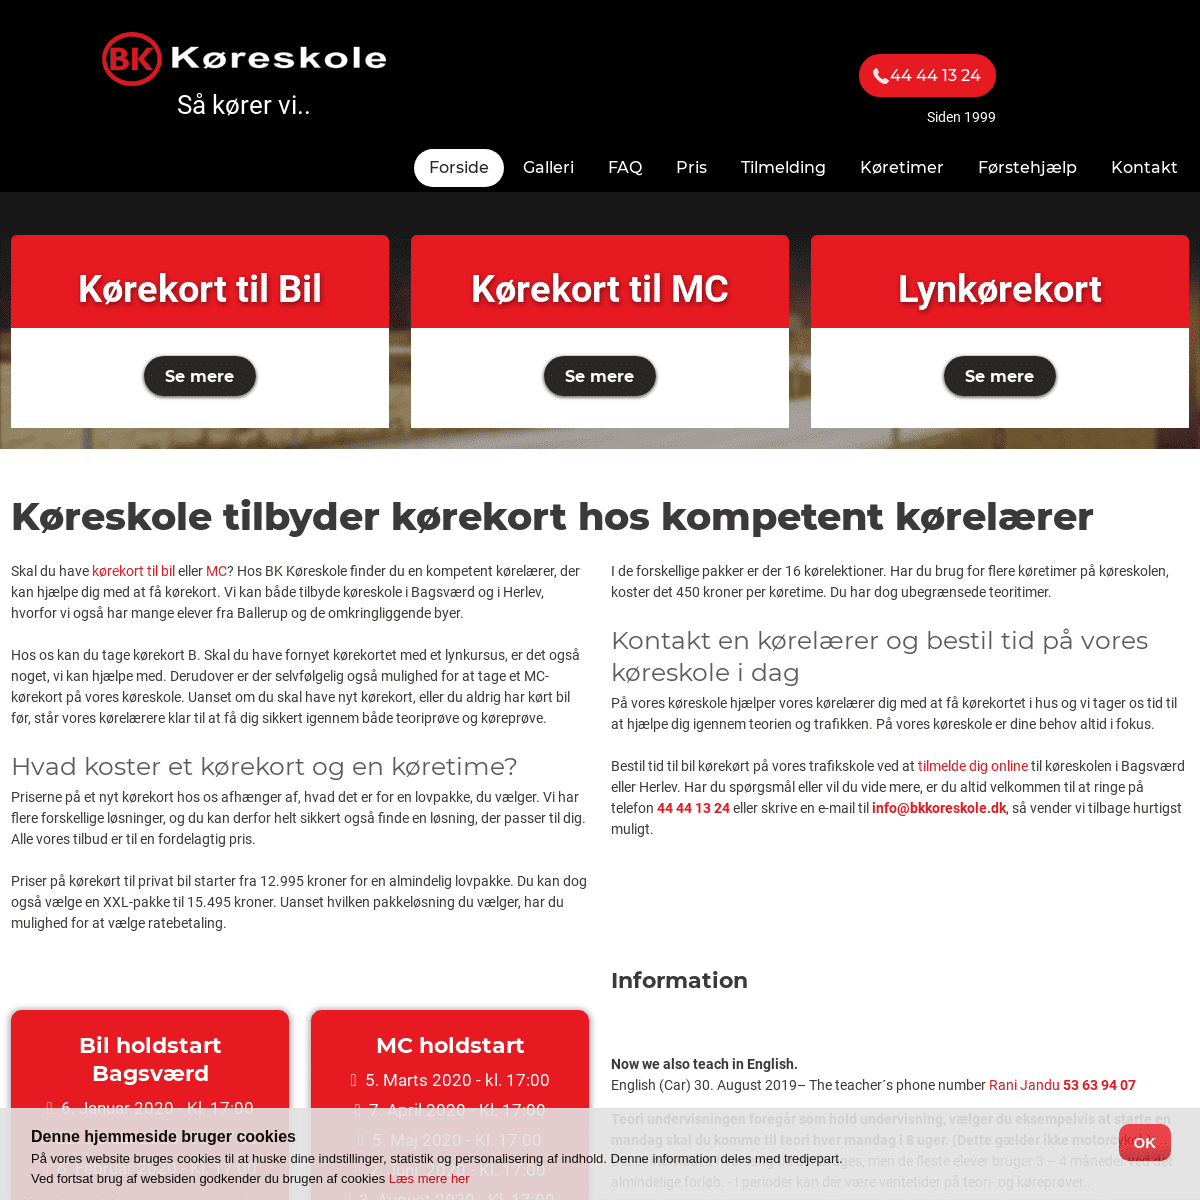 A complete backup of bkkoreskole.dk